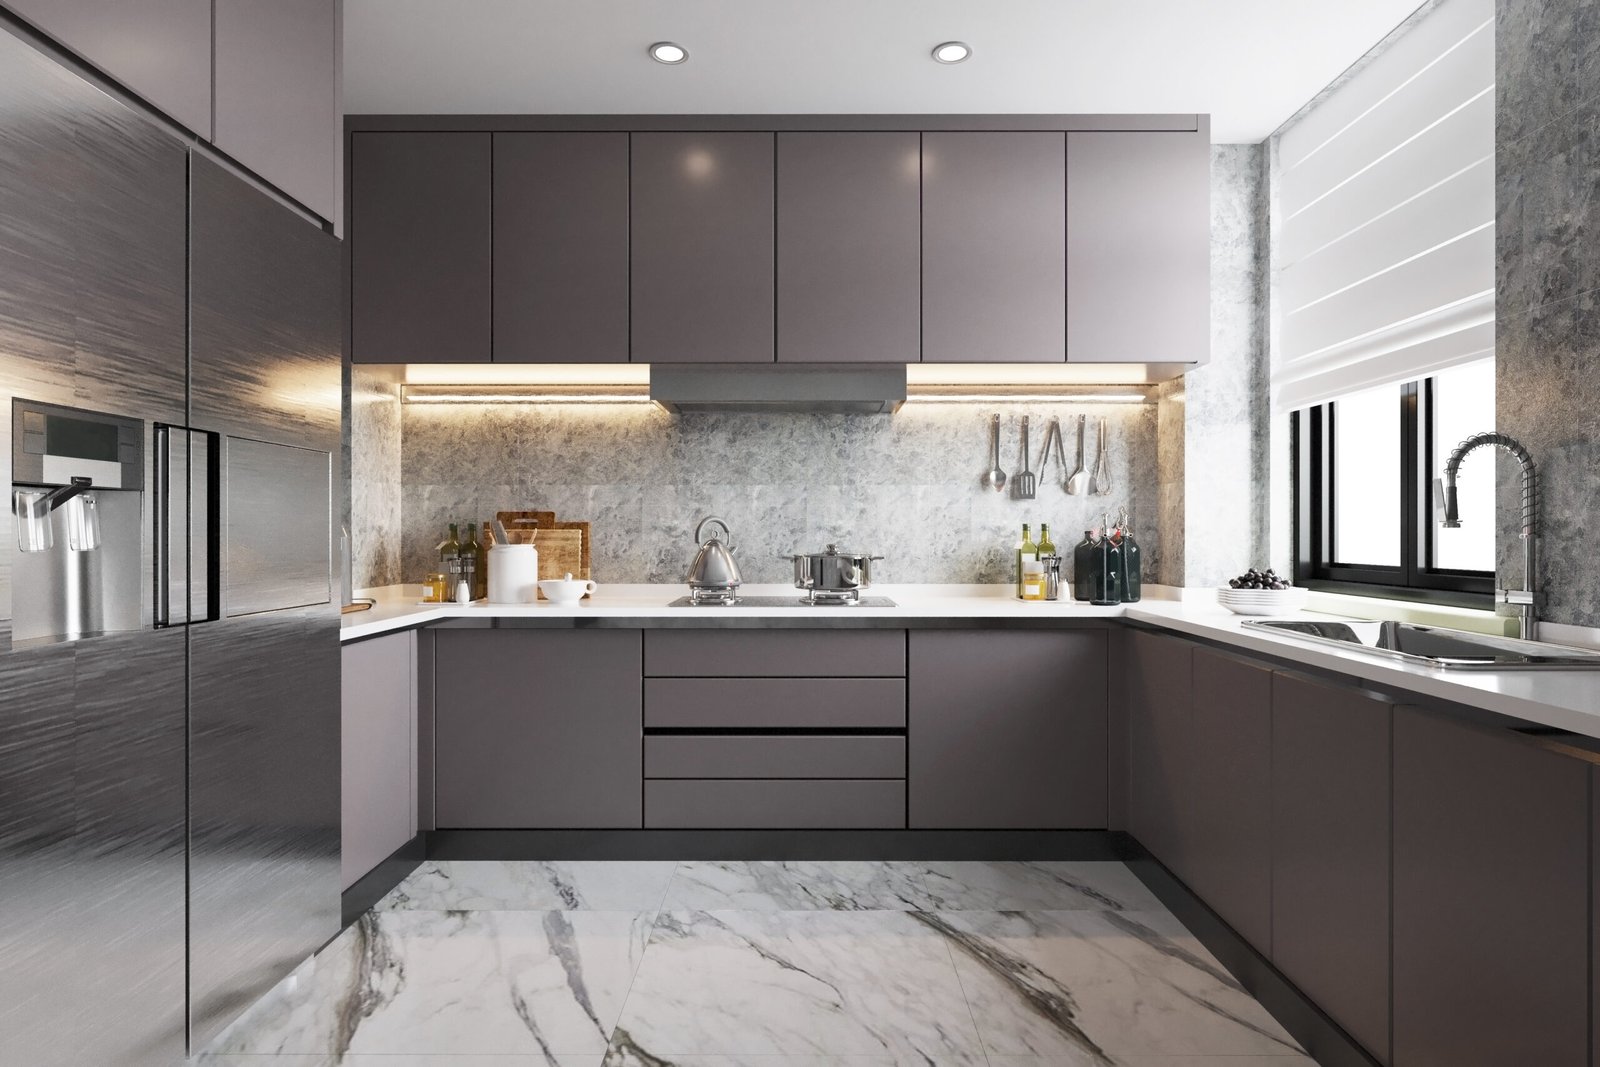 modern-kitchen-interior-home-with-kitchenware3d-illustration (1)